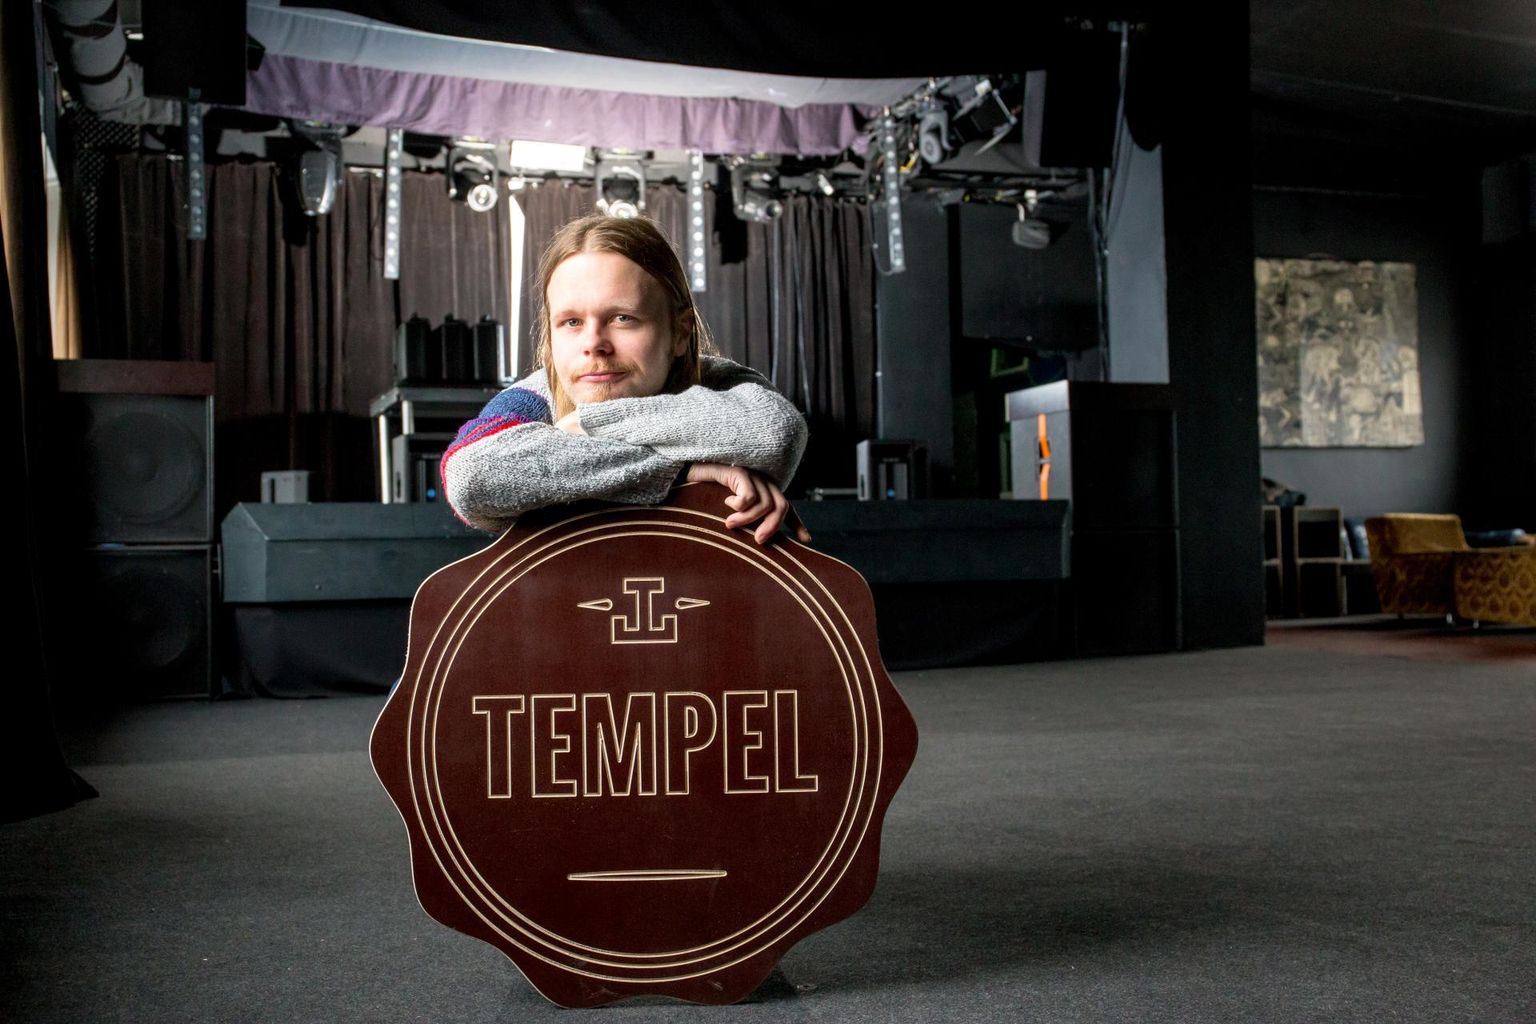 Kultuuriklubi Tempel juht Andres Tölp kinnitas, et linnavalitsus ei toetanud Festhearti filmi näitamist, vaid festivali korraldajad ise rentisid Templilt sündmuse läbiviimiseks pinda.